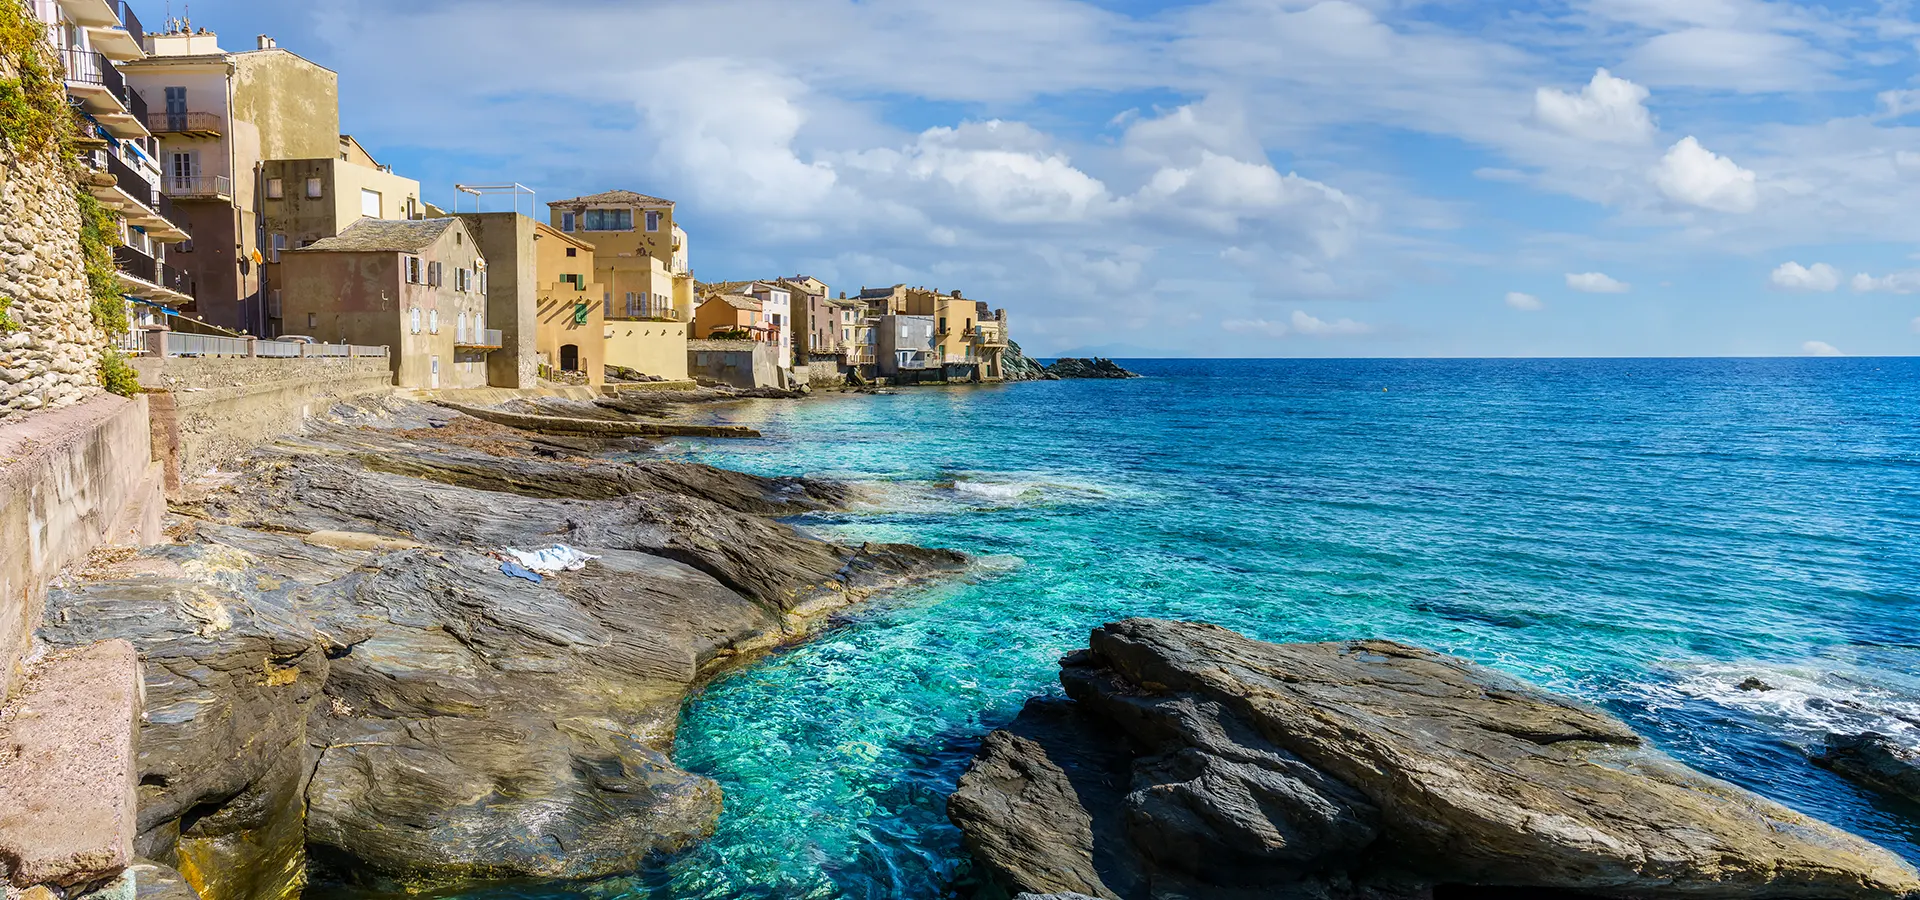 Vivez des séjours inoubliables en Corse